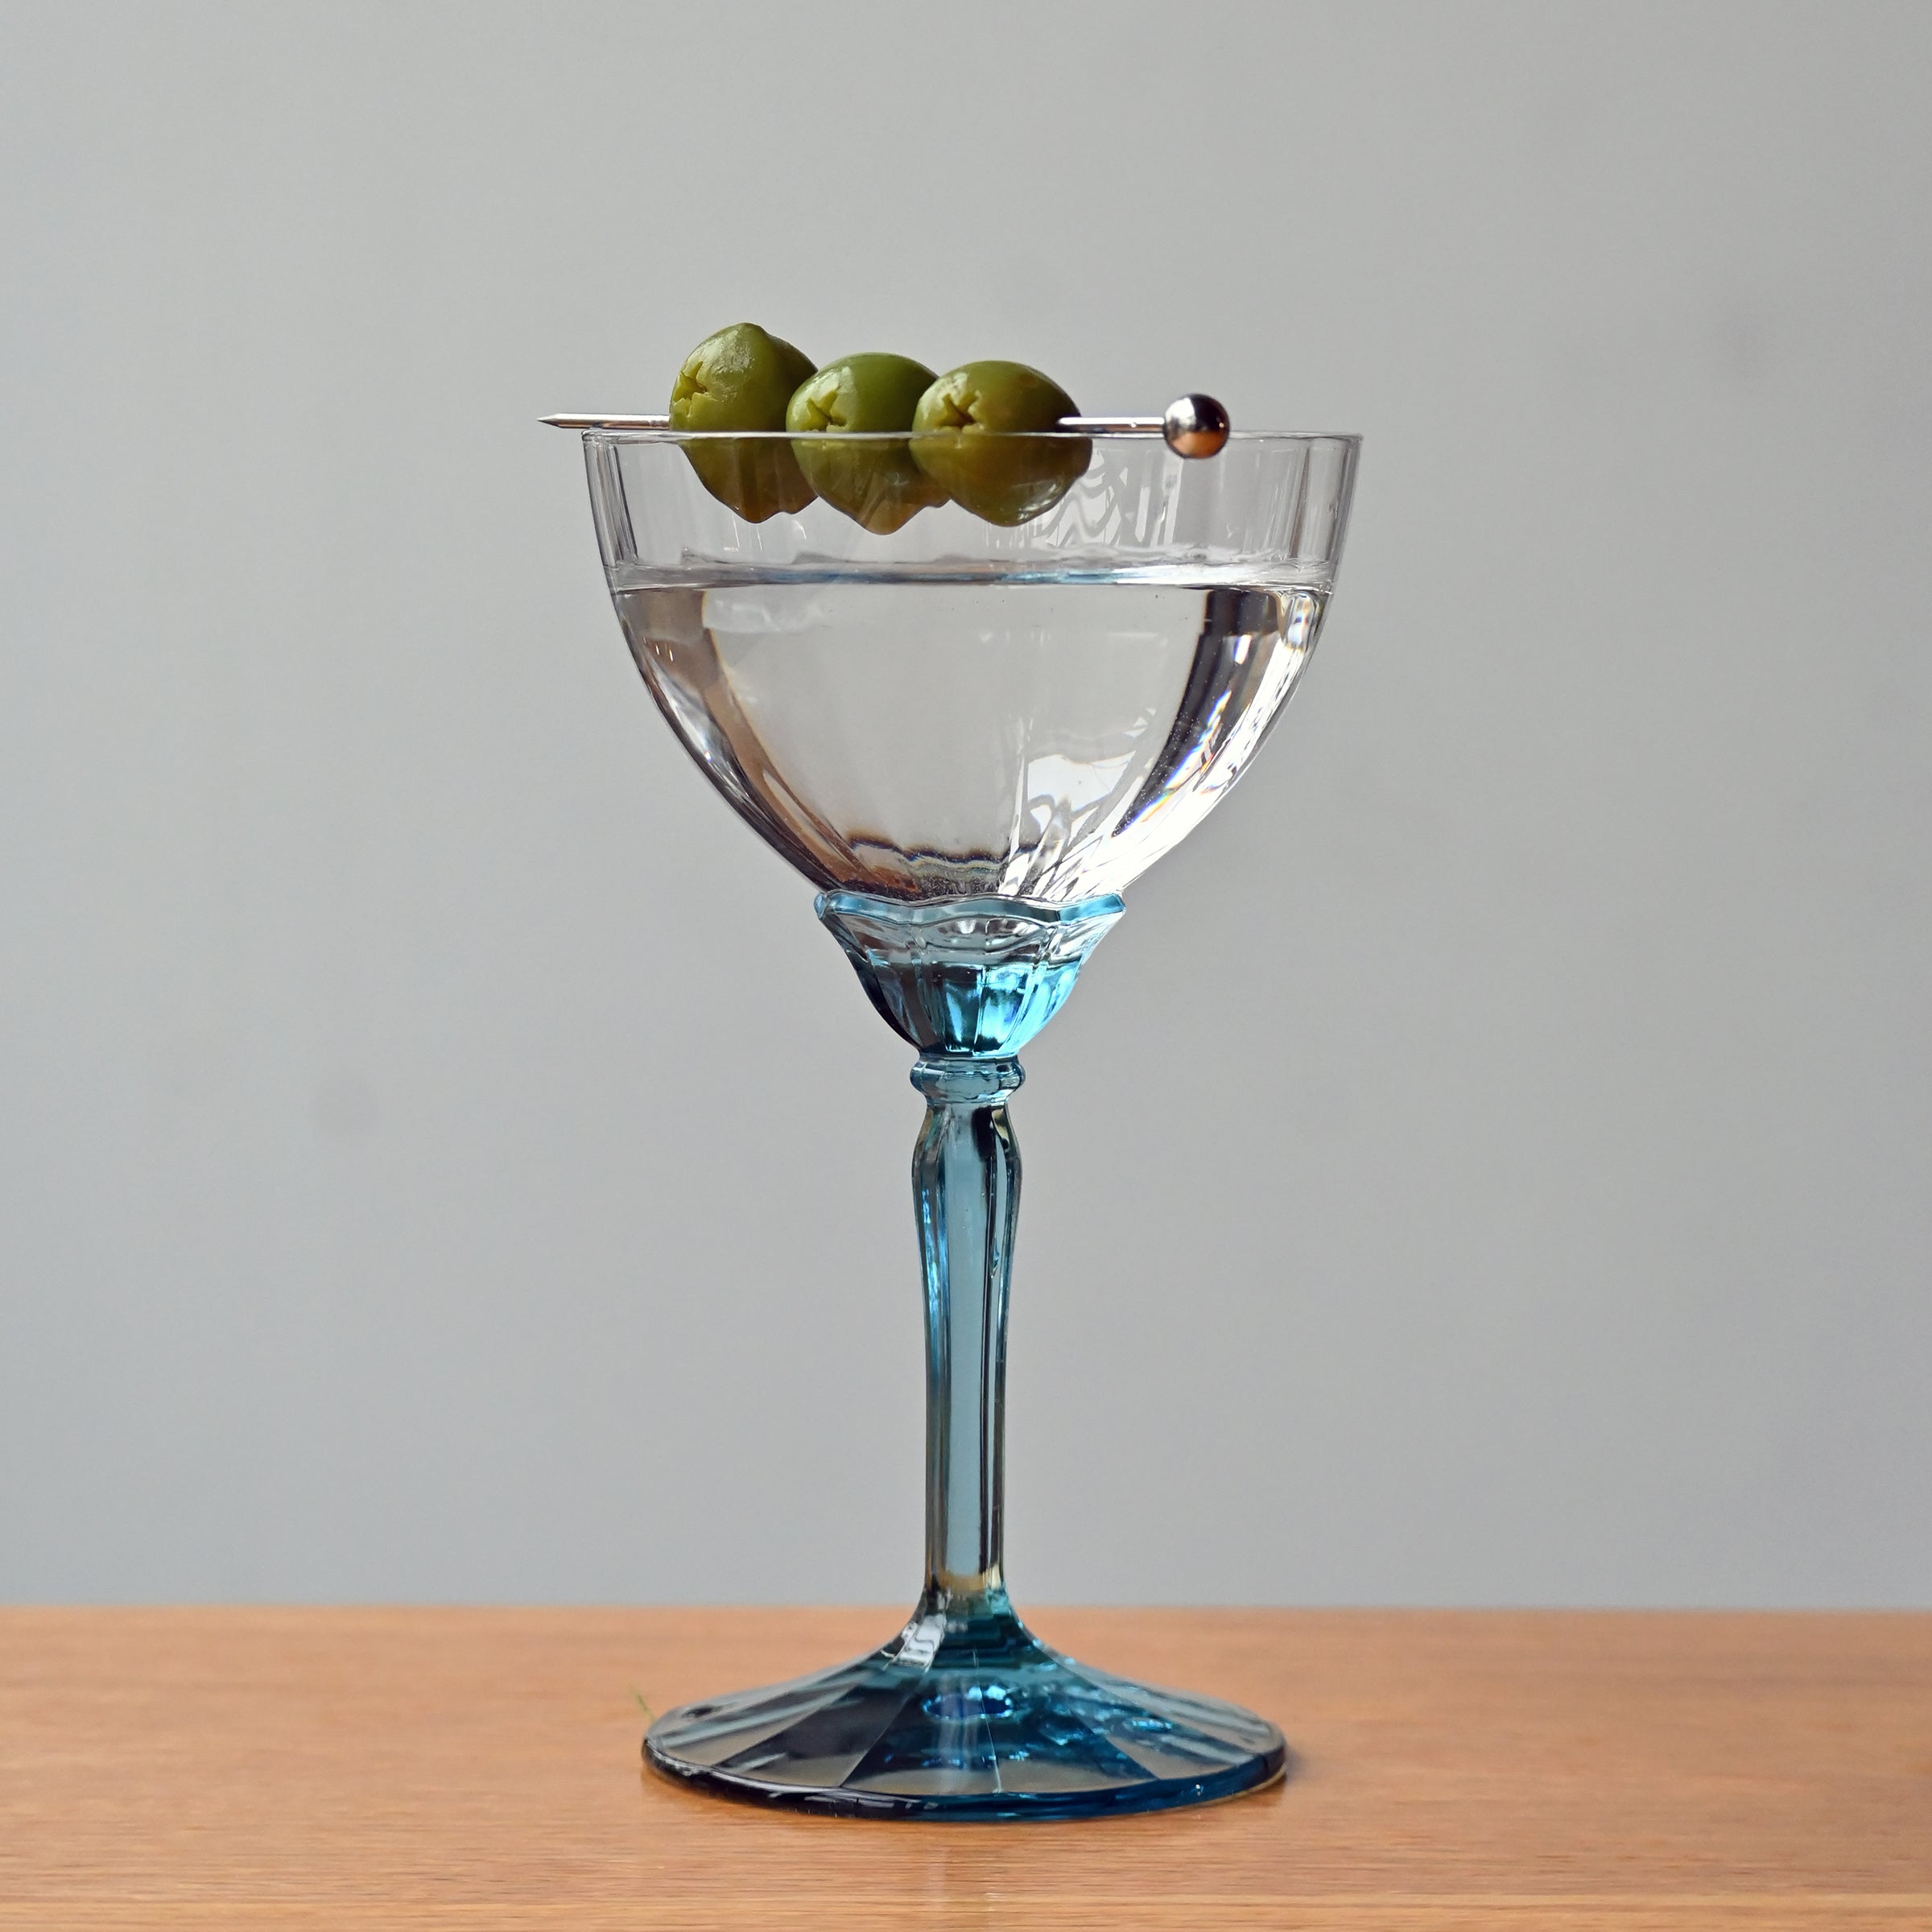 Martini Glass, Blue Rim 15oz Short Stem set of four with 80oz bola pitcher